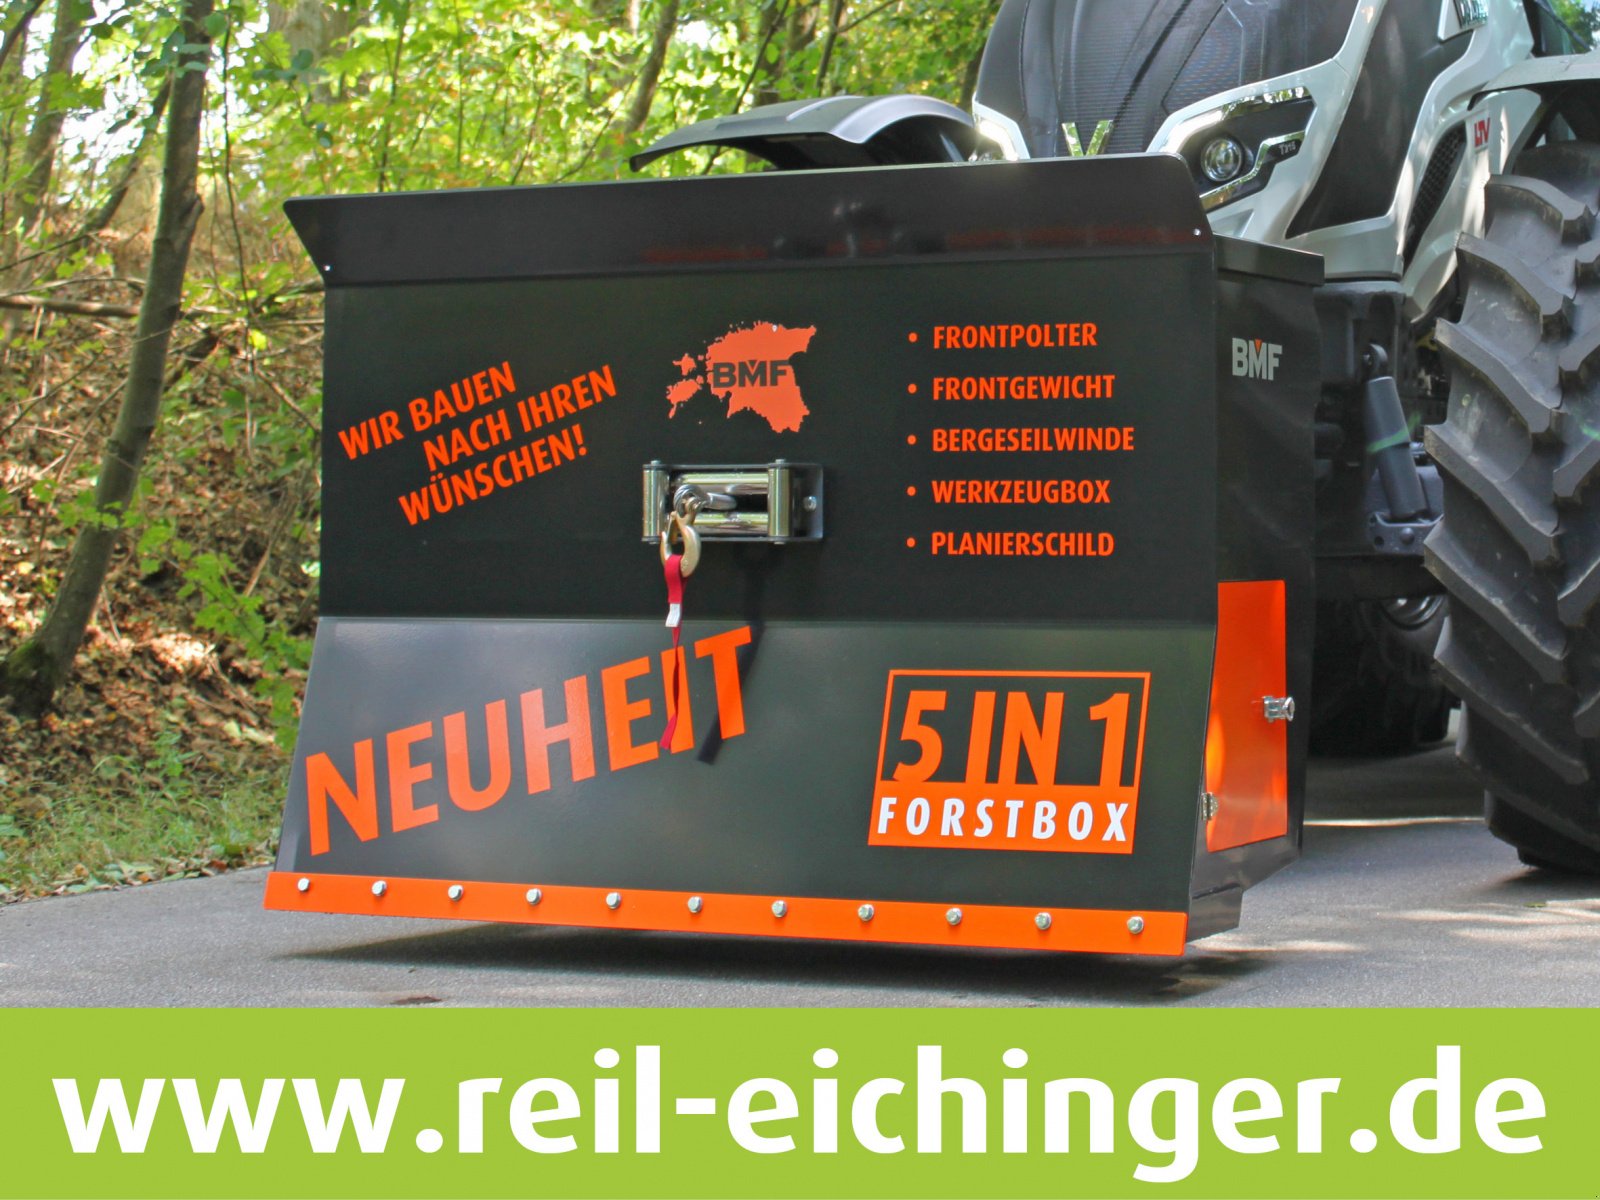 Rückewagen & Rückeanhänger des Typs Reil & Eichinger BMF Forstbox 5 in 1, Neumaschine in Nittenau (Bild 2)